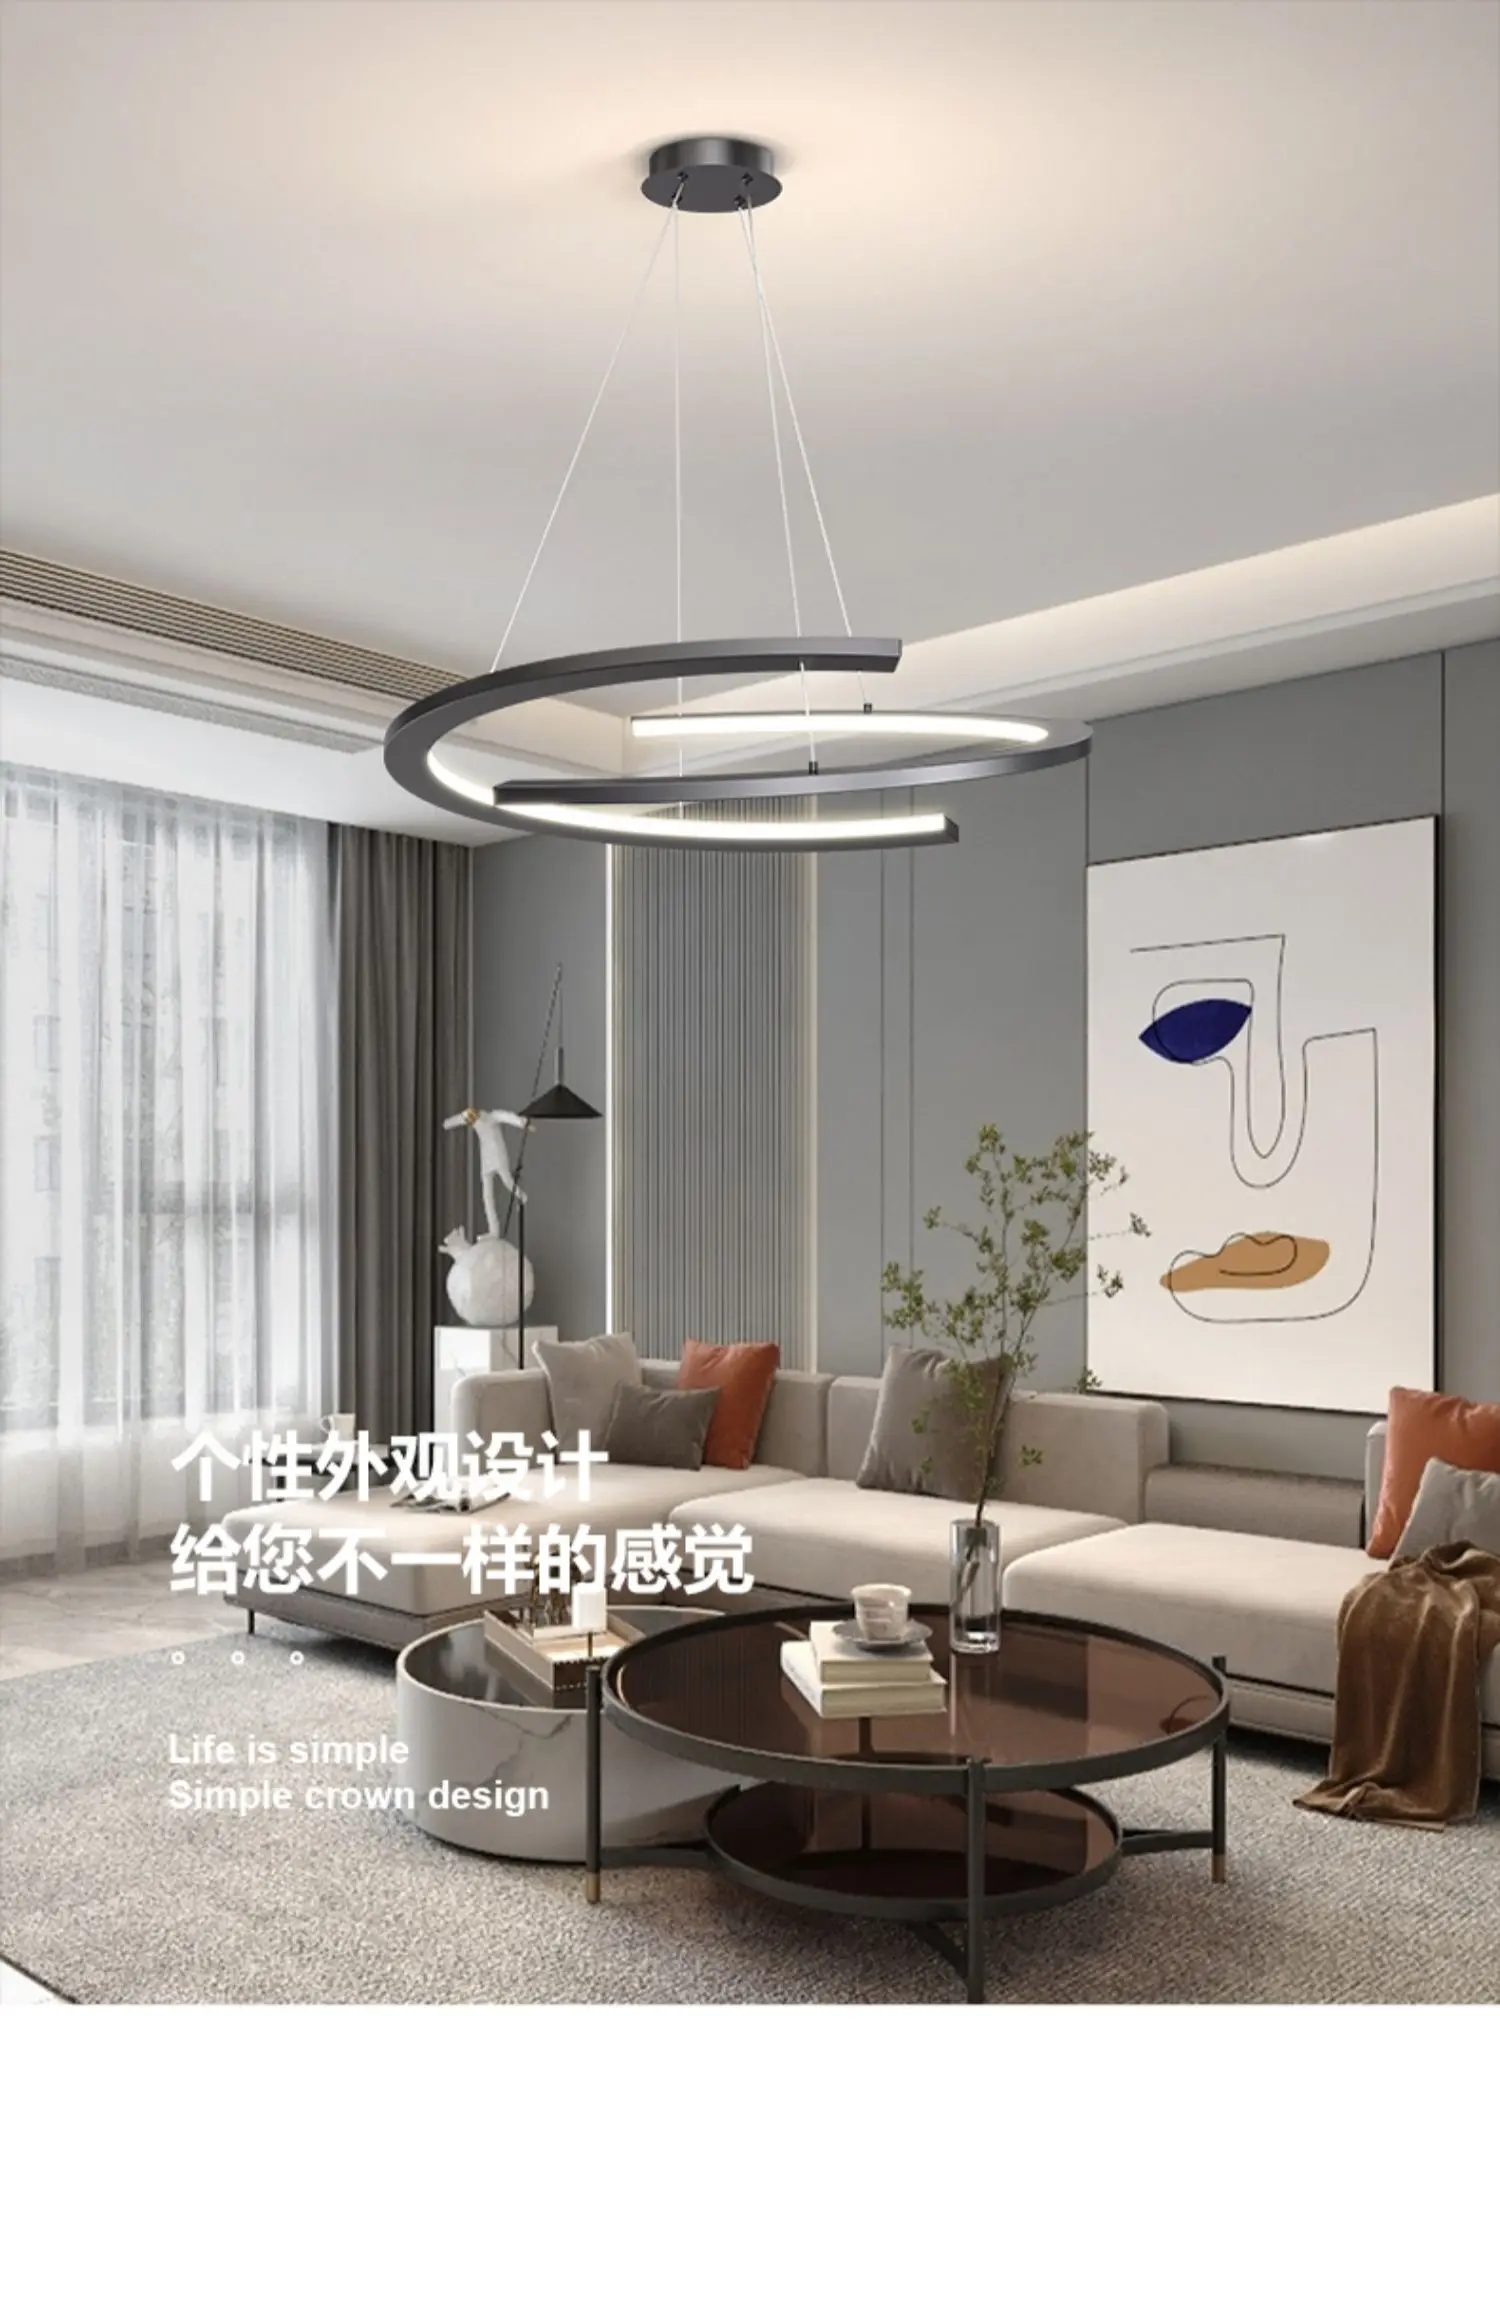 Основное освещение в гостиной в стиле минимализма, современная и простая атмосфера, персонализированный круглый подвесной светильник для ресторана Изображение 4